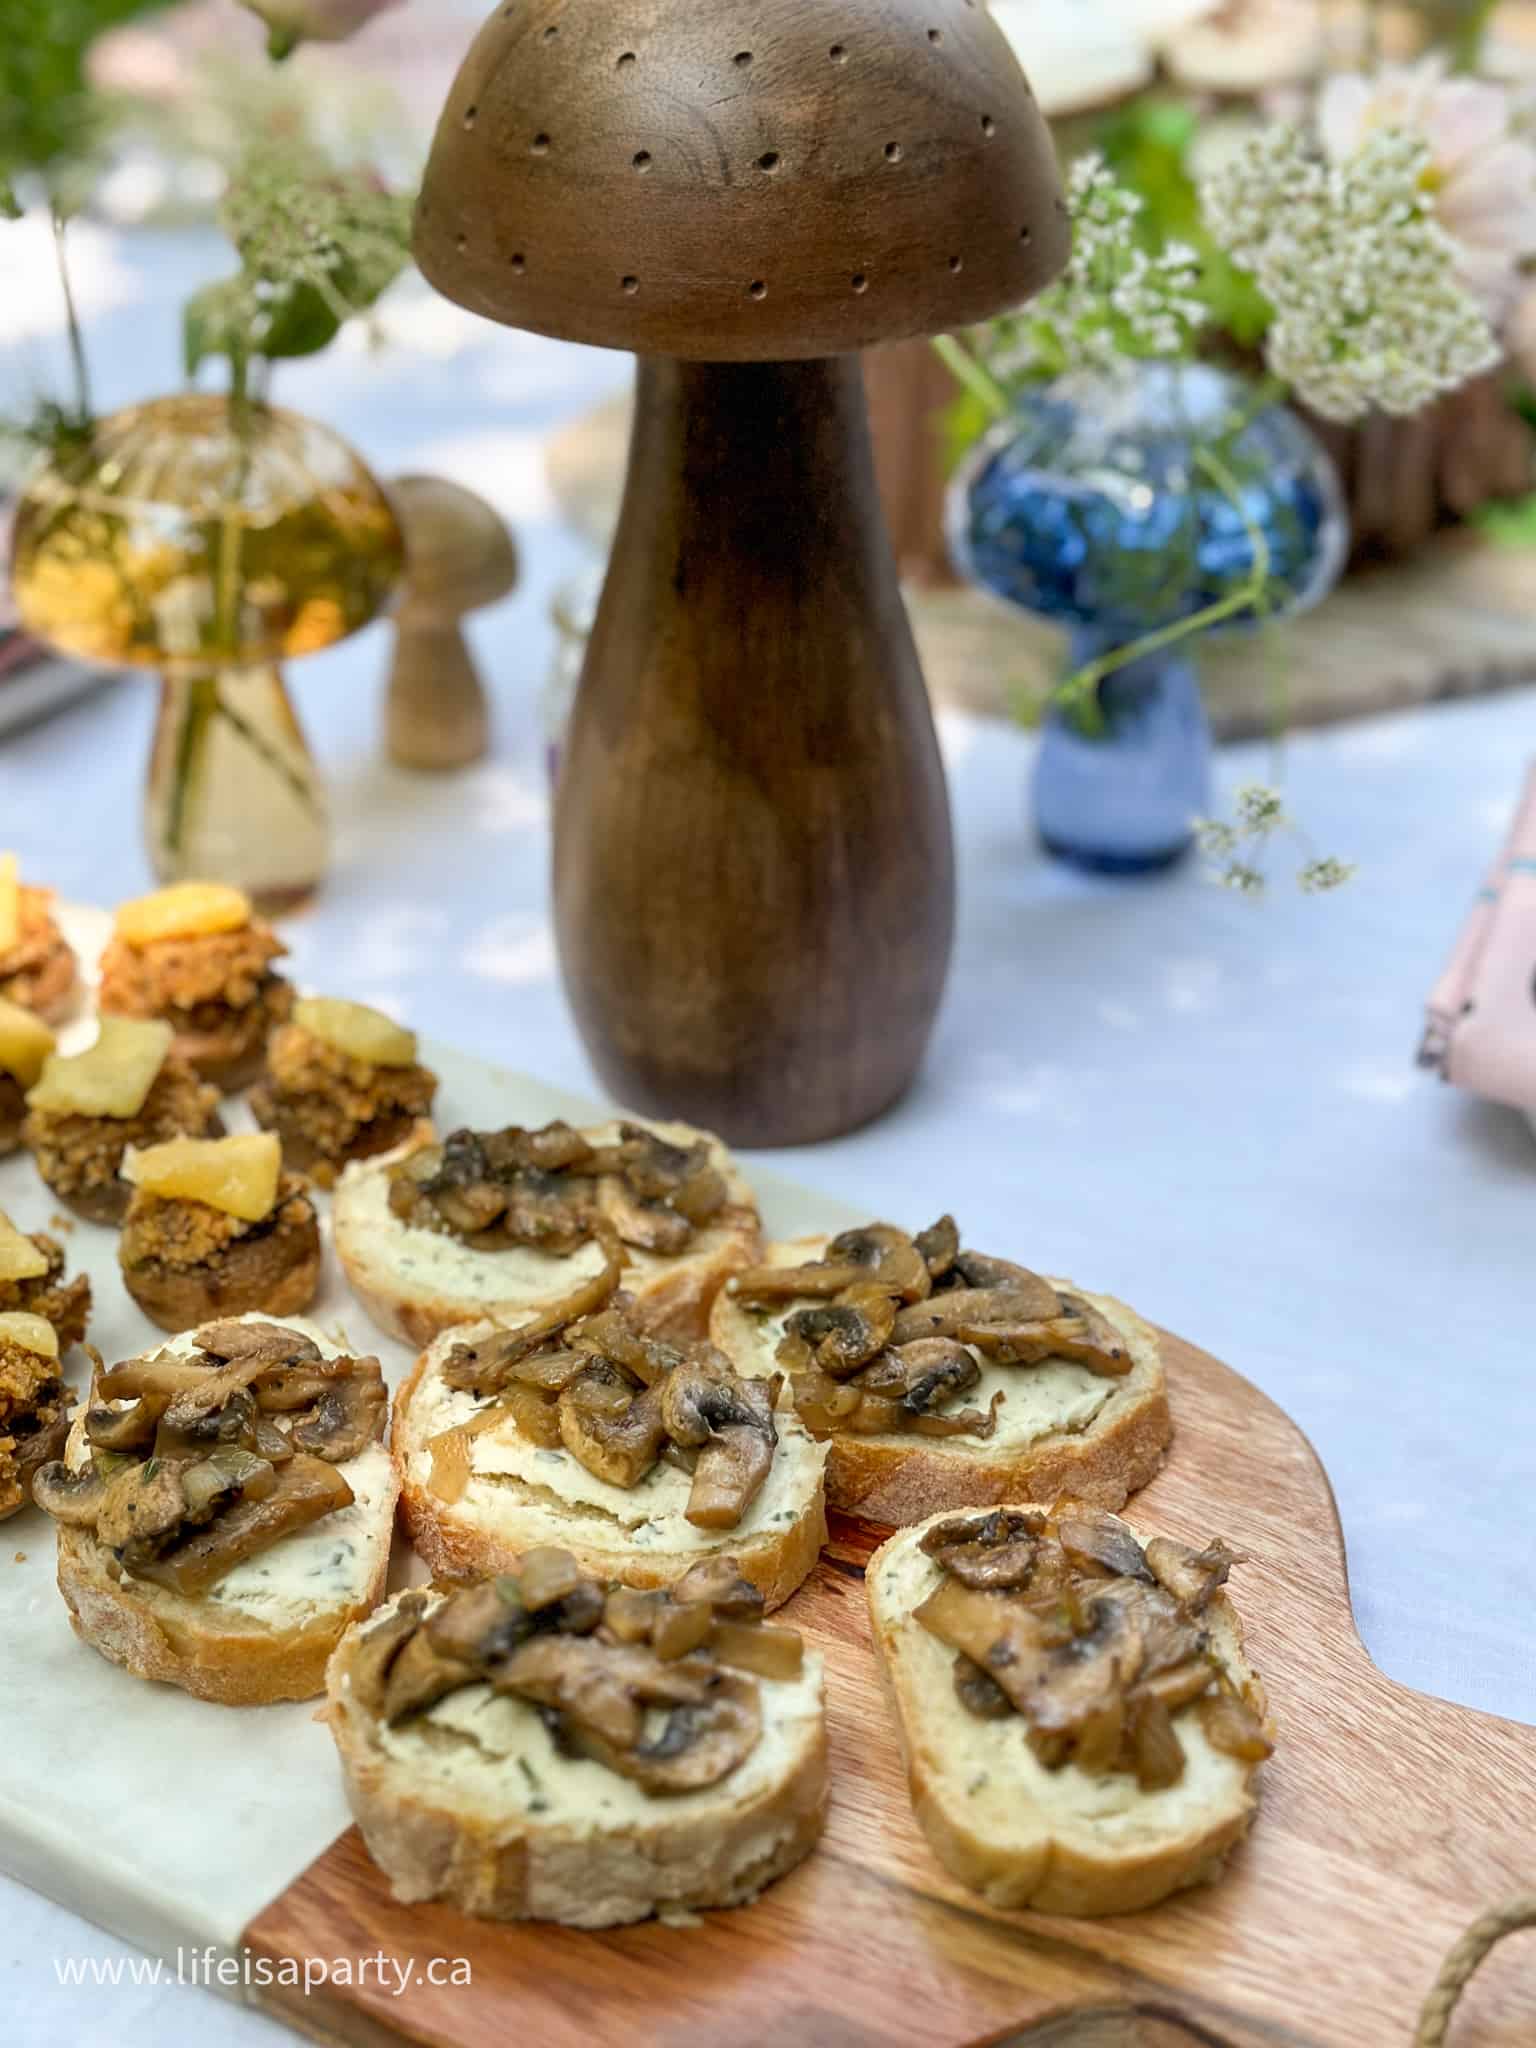 mushroom themed food ideas